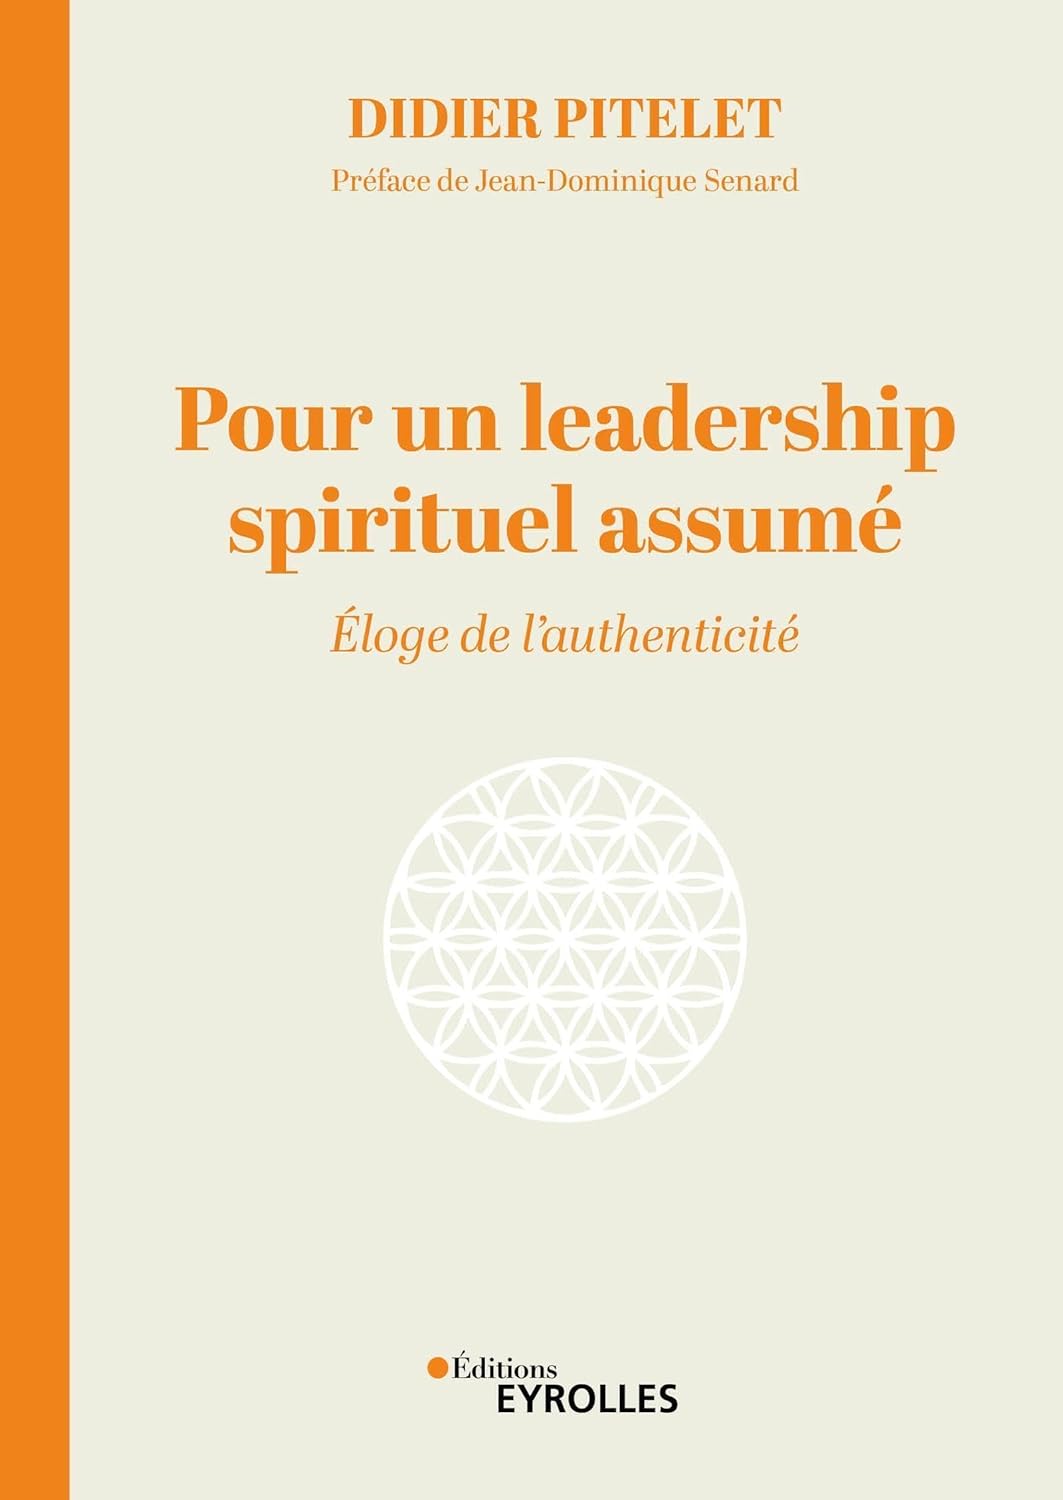 pour-un-leadership-spirituel-assume-eloge-de-l-authenticite-didier-pitelet